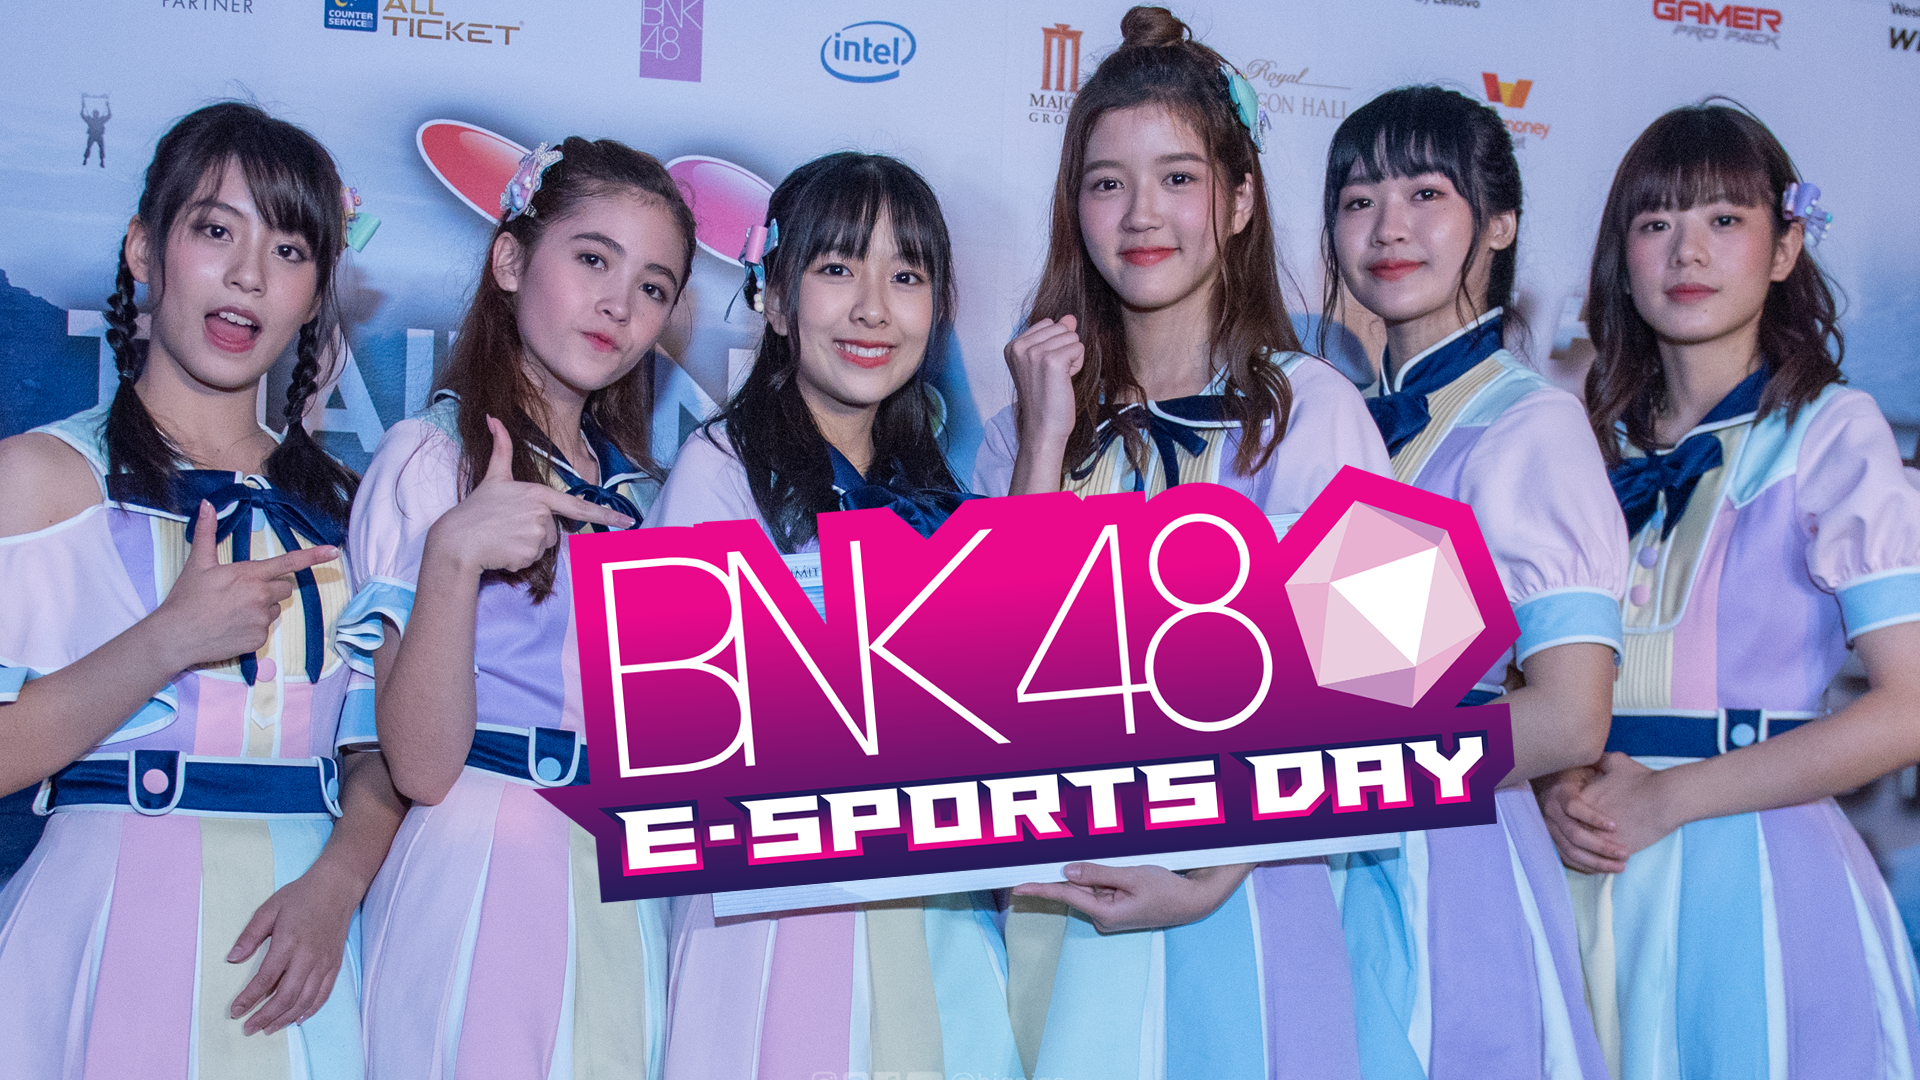 [อัลบั้มภาพ BNK48] Thailand Game Show x BNK48 เซอร์ไพรส์ ประกาศ “BNK48 E-SPORTS DAY” กลางงานแถลงข่าว